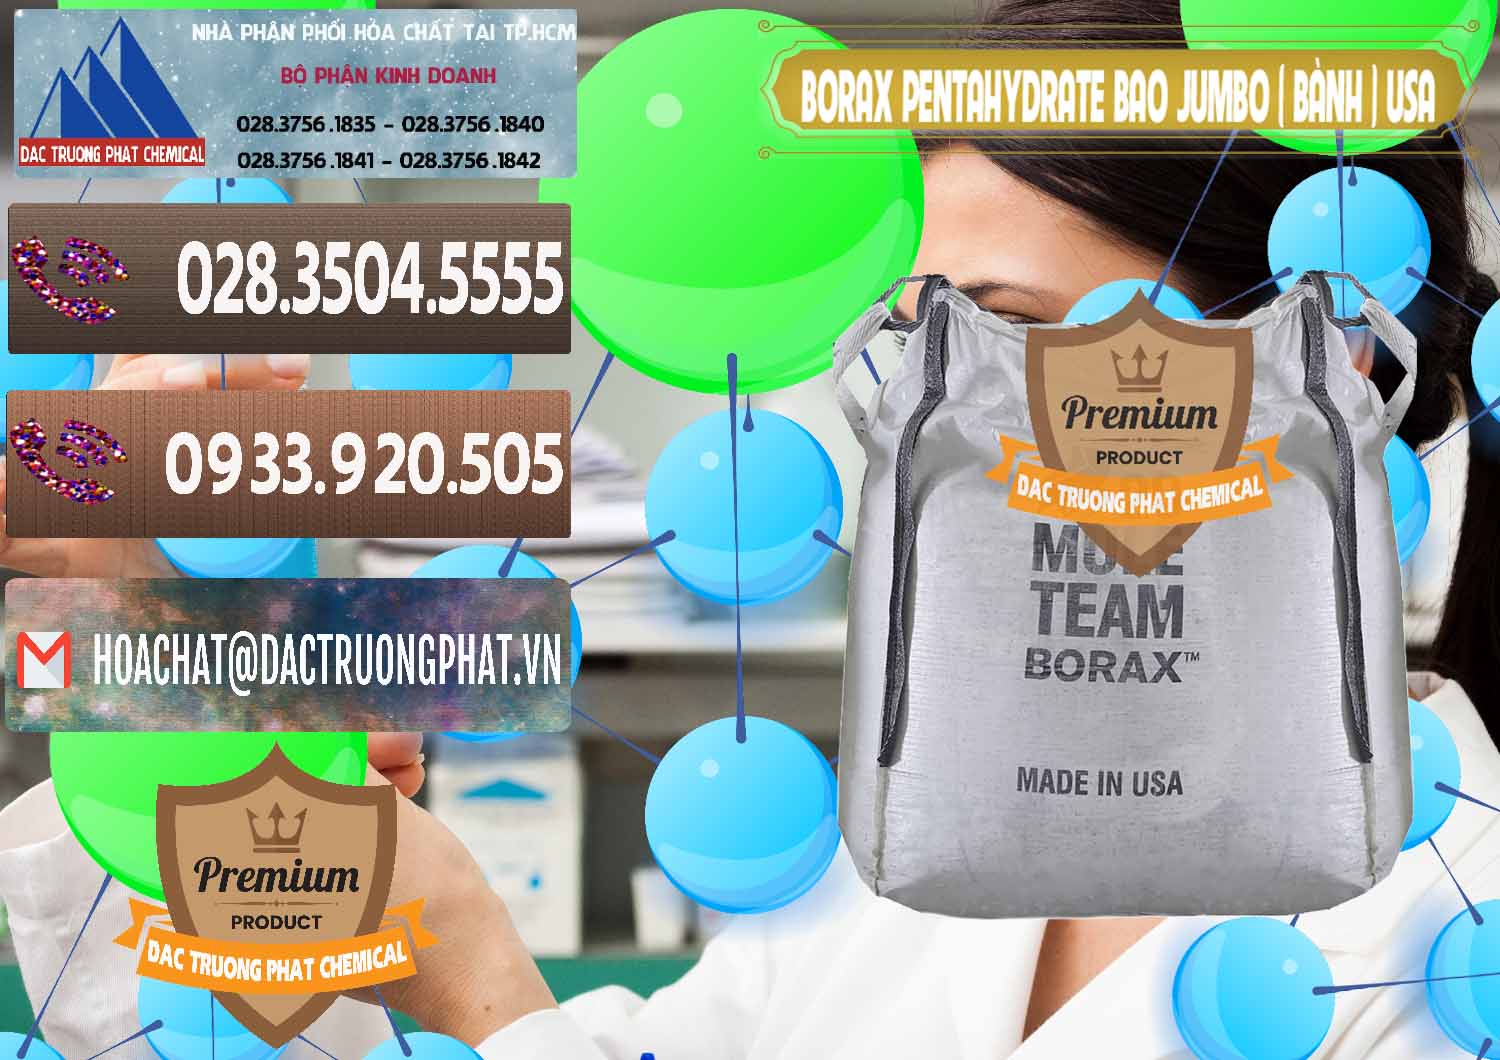 Công ty cung cấp _ bán Borax Pentahydrate Bao Jumbo ( Bành ) Mule 20 Team Mỹ Usa - 0278 - Công ty bán & phân phối hóa chất tại TP.HCM - hoachatviet.net